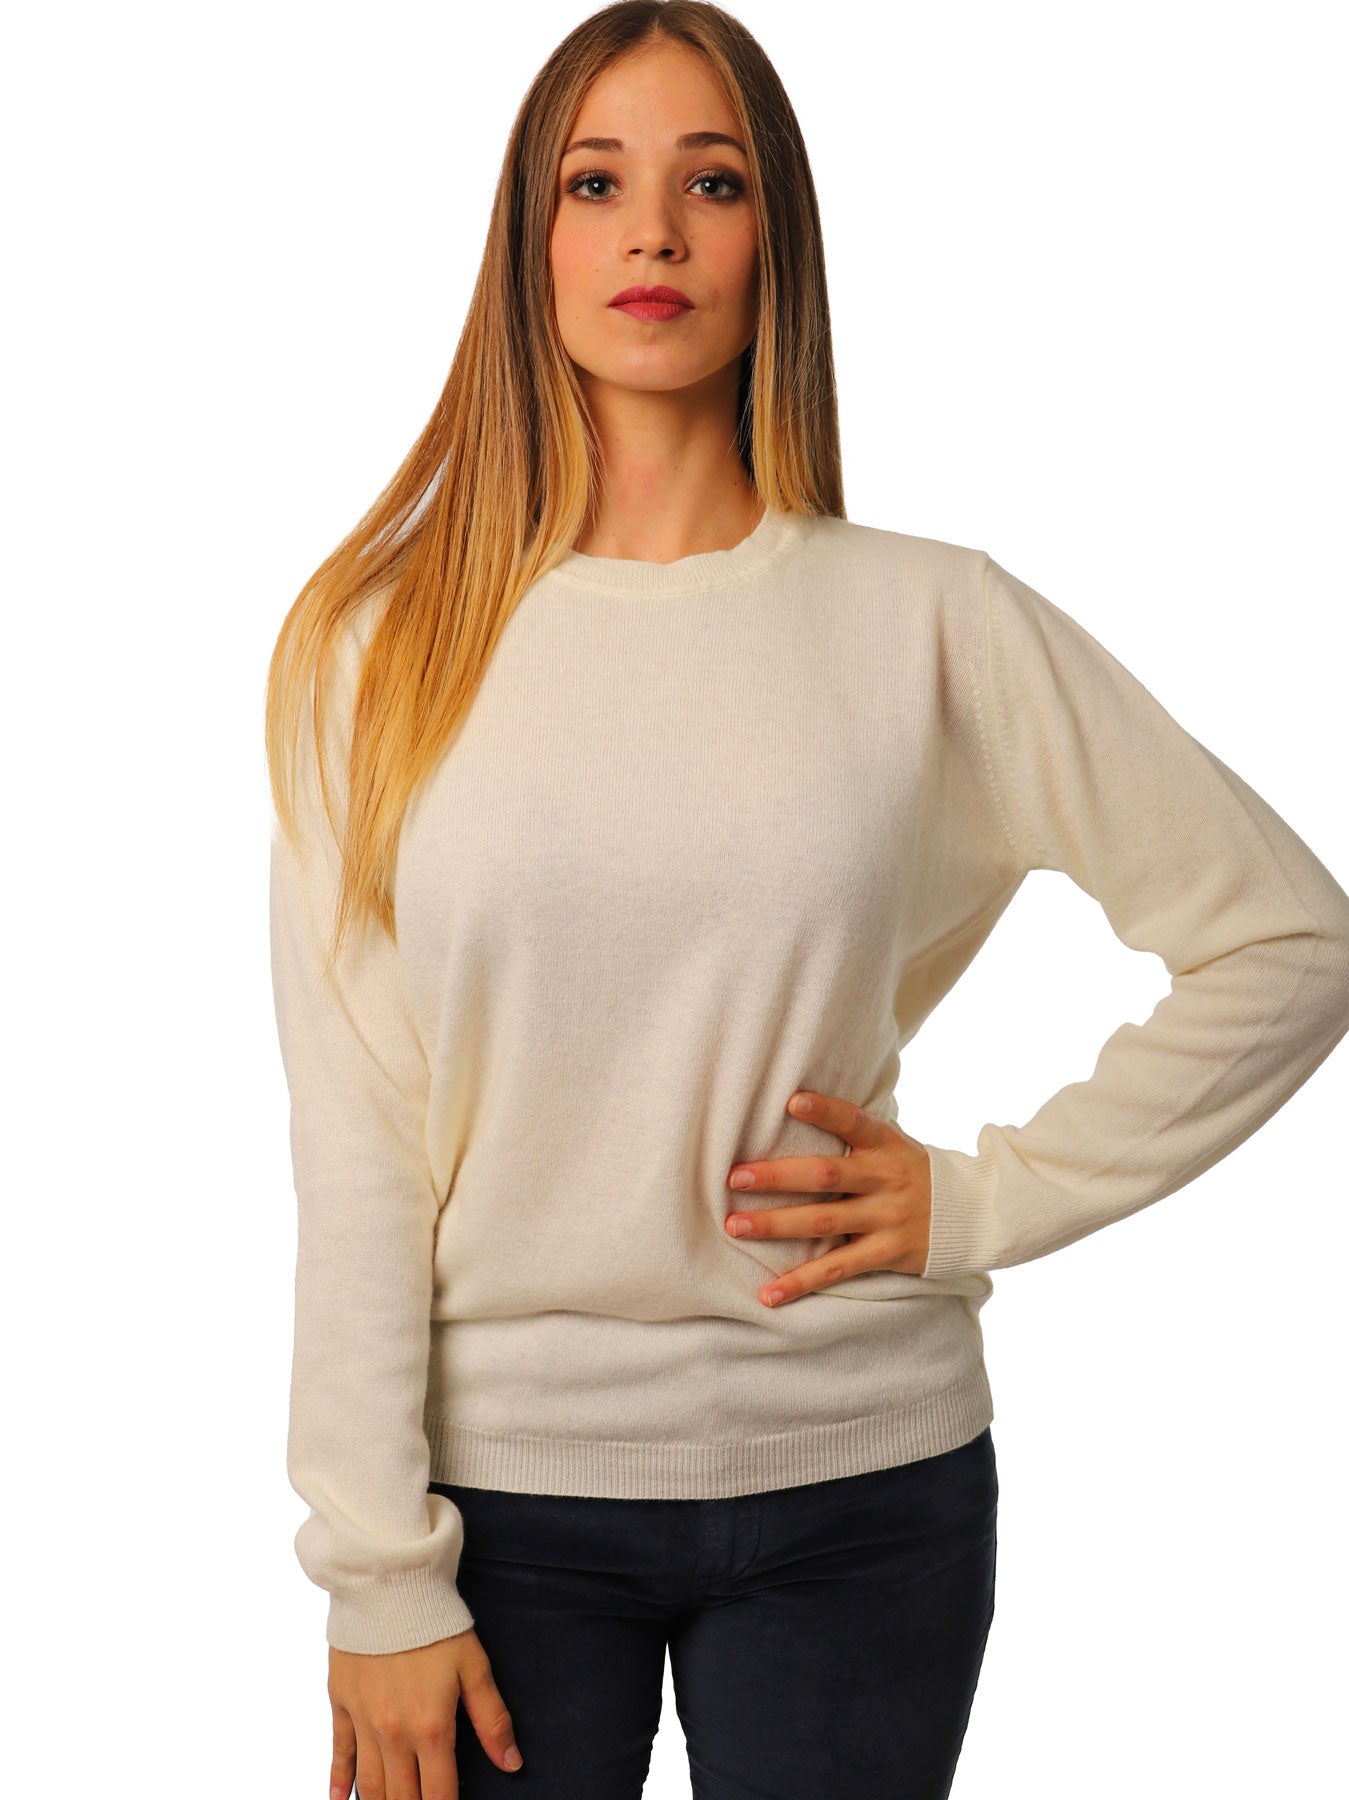 Women's crew neck sweater